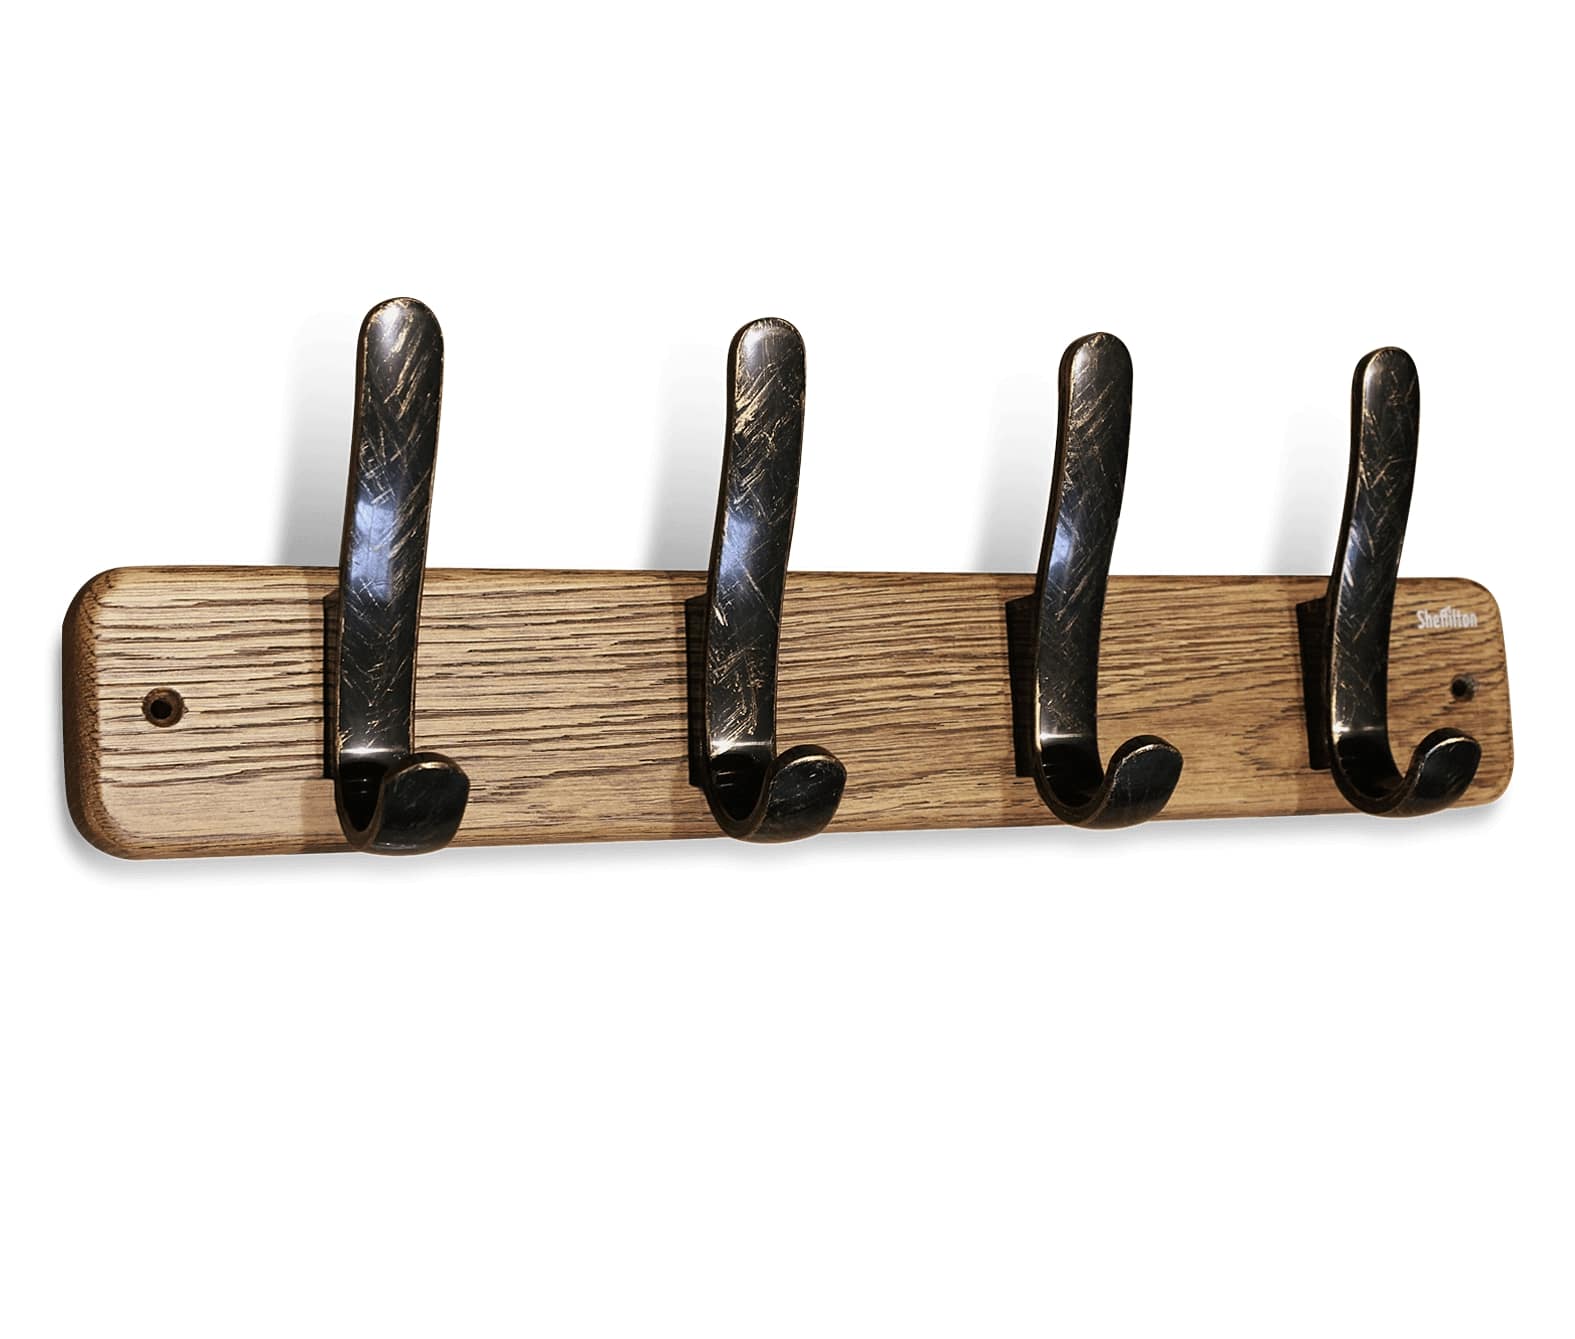 Фото - вешалка настенная деревянная sht-wh20 из массива дуба на 4 крючка для одежды